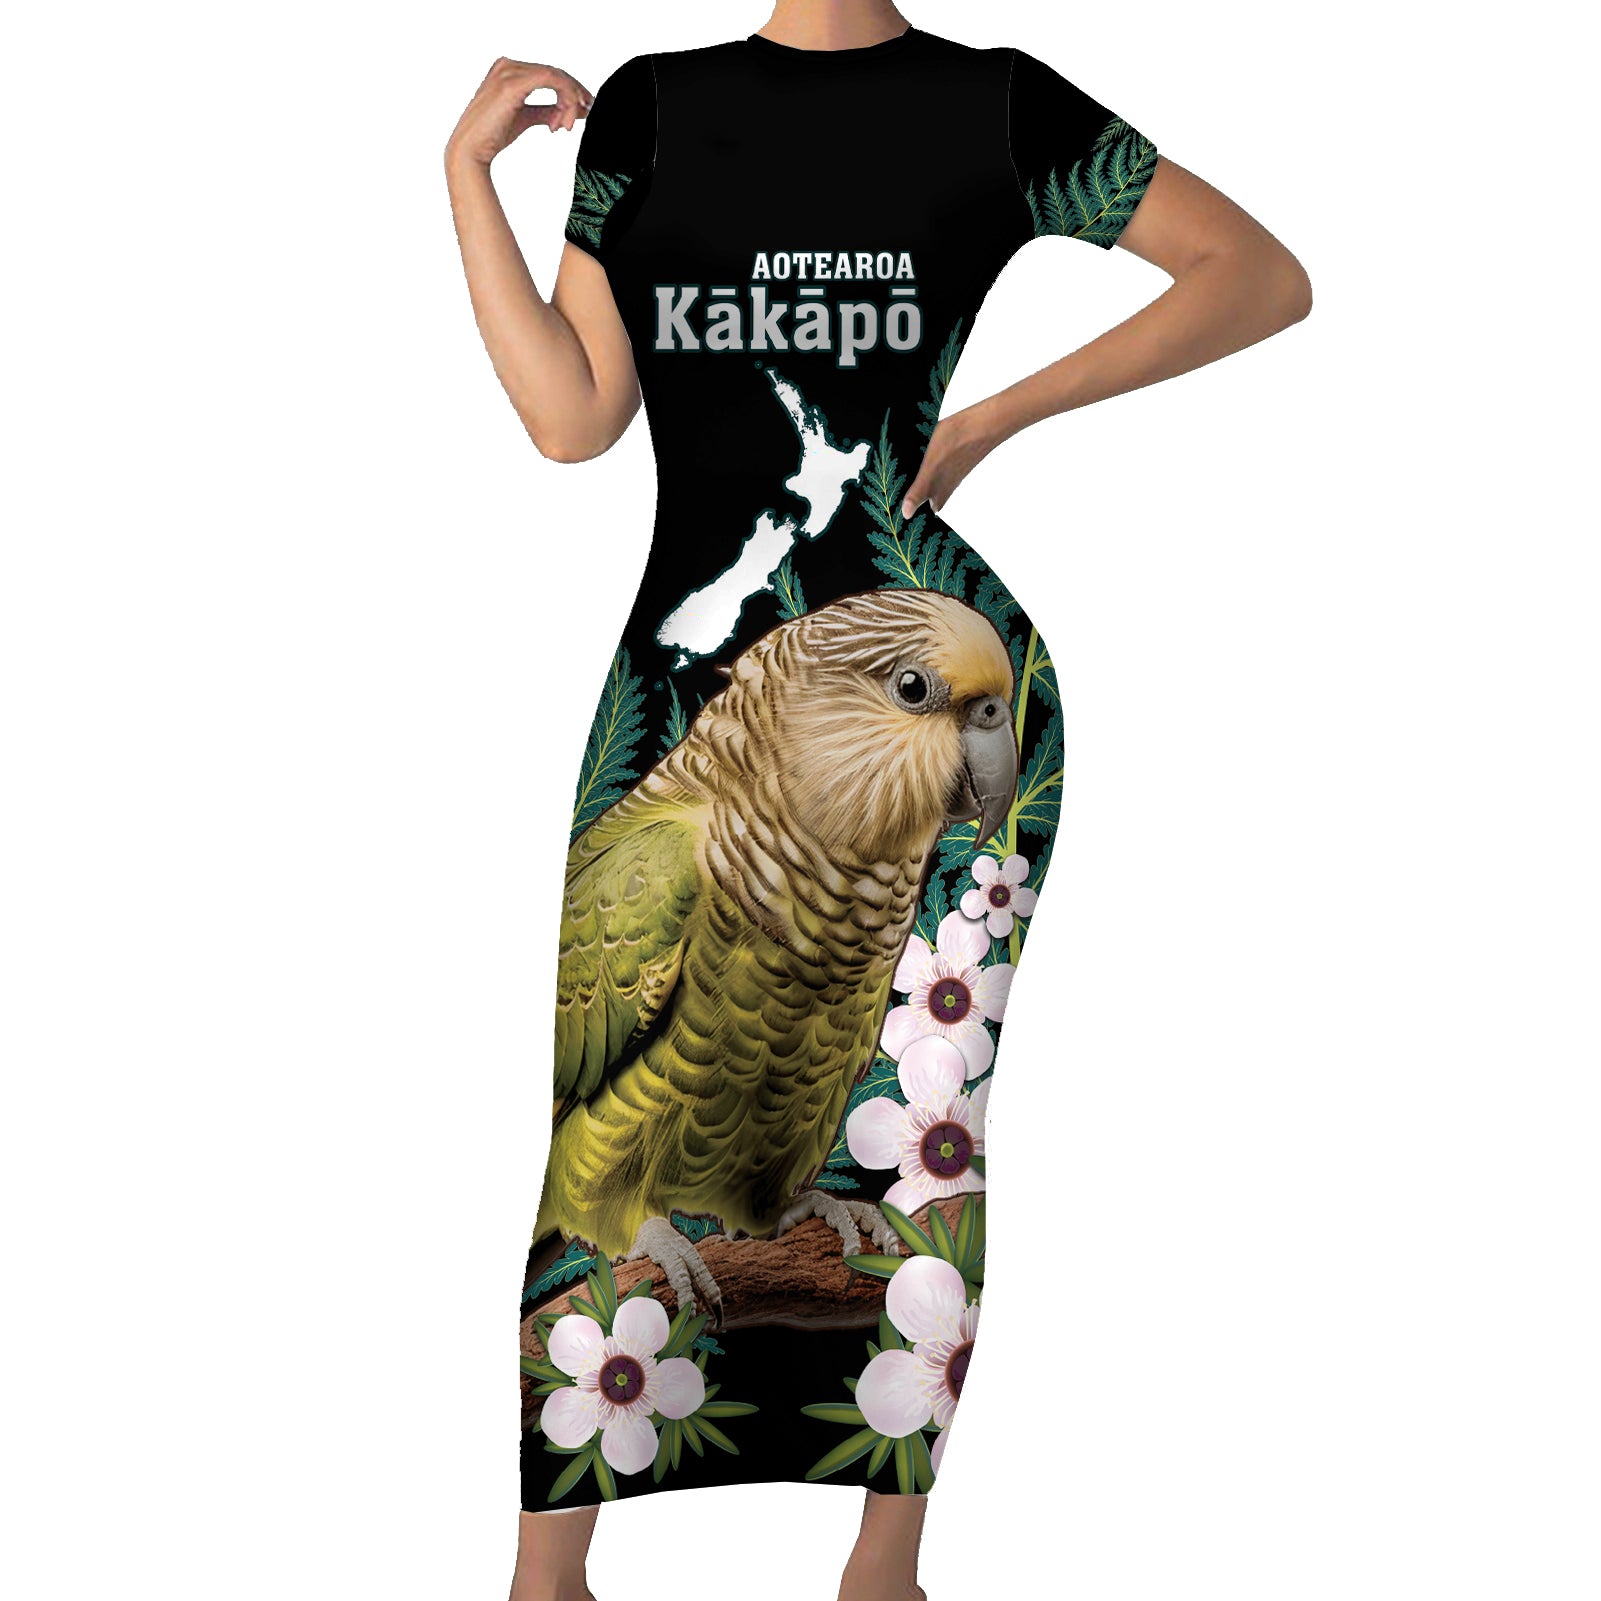 Personalised New Zealand Kakapo Short Sleeve Bodycon Dress Aotearoa Fern With Manuka